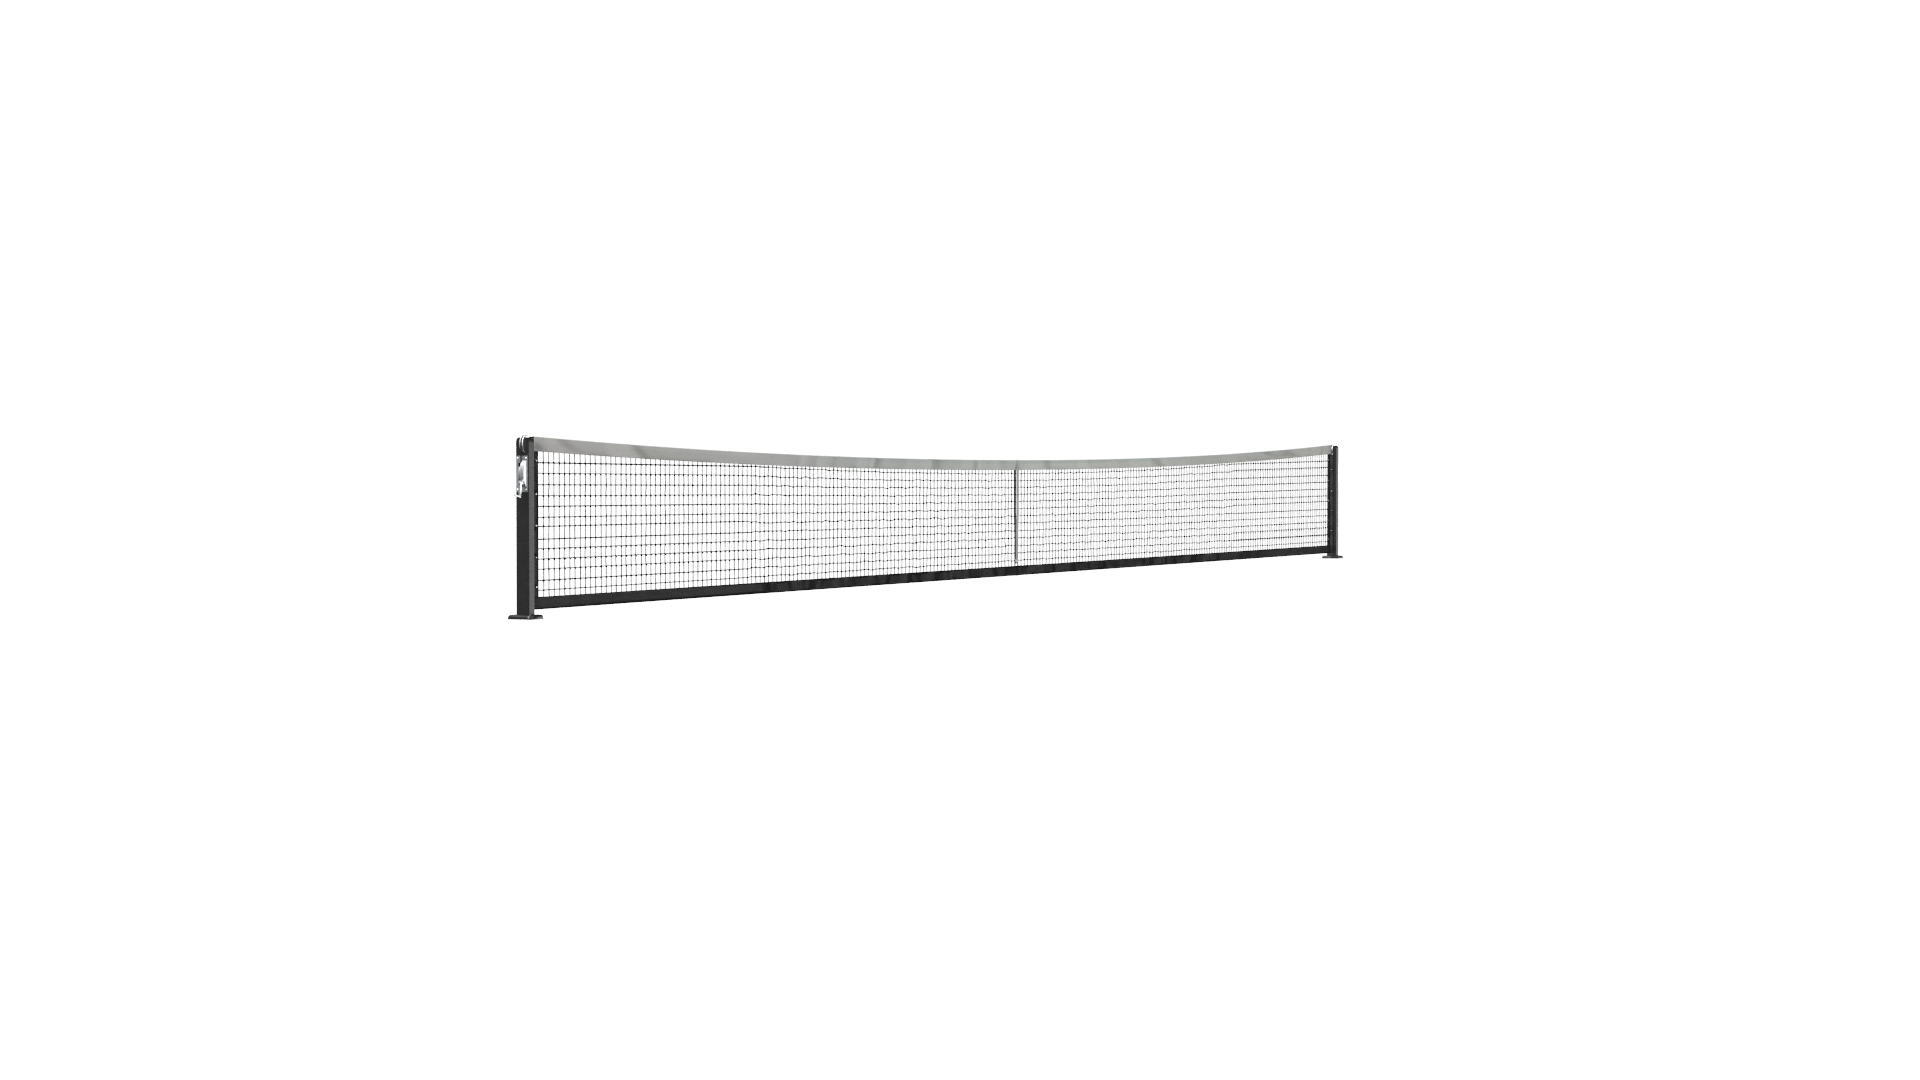 3D Tennis Net Court Model - TurboSquid 1686772